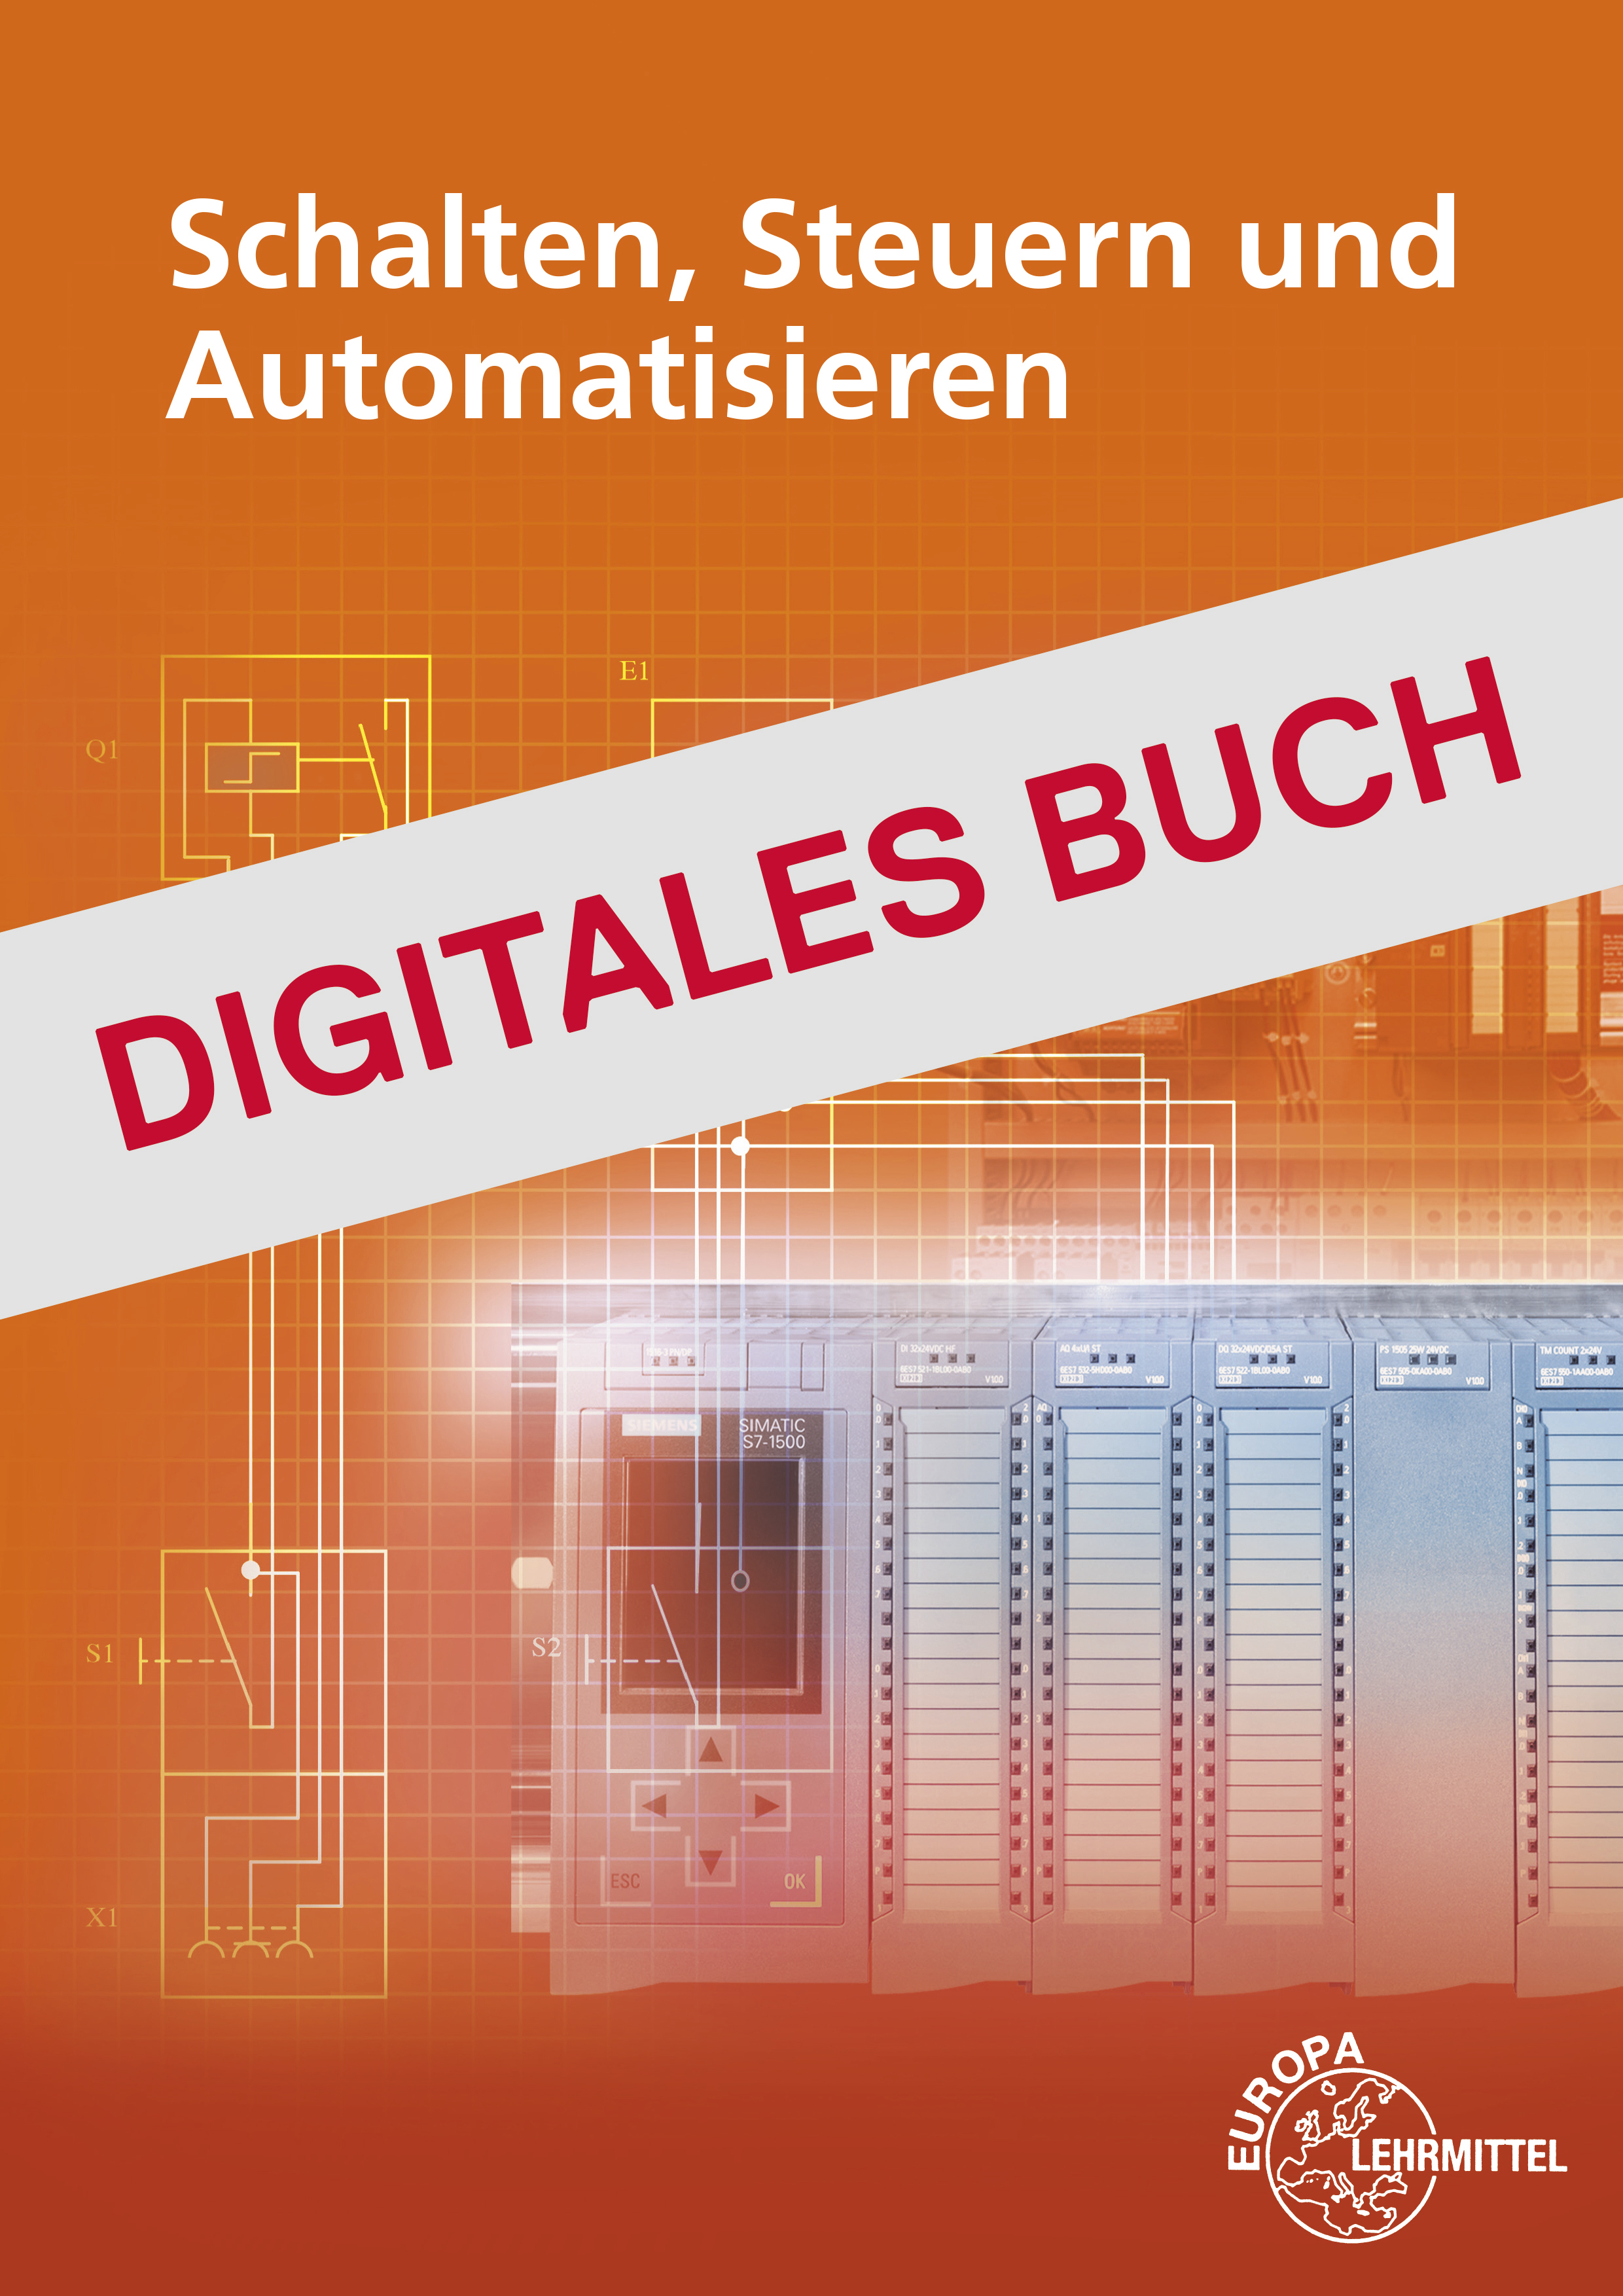 Schalten, Steuern und Automatisieren - Digitales Buch